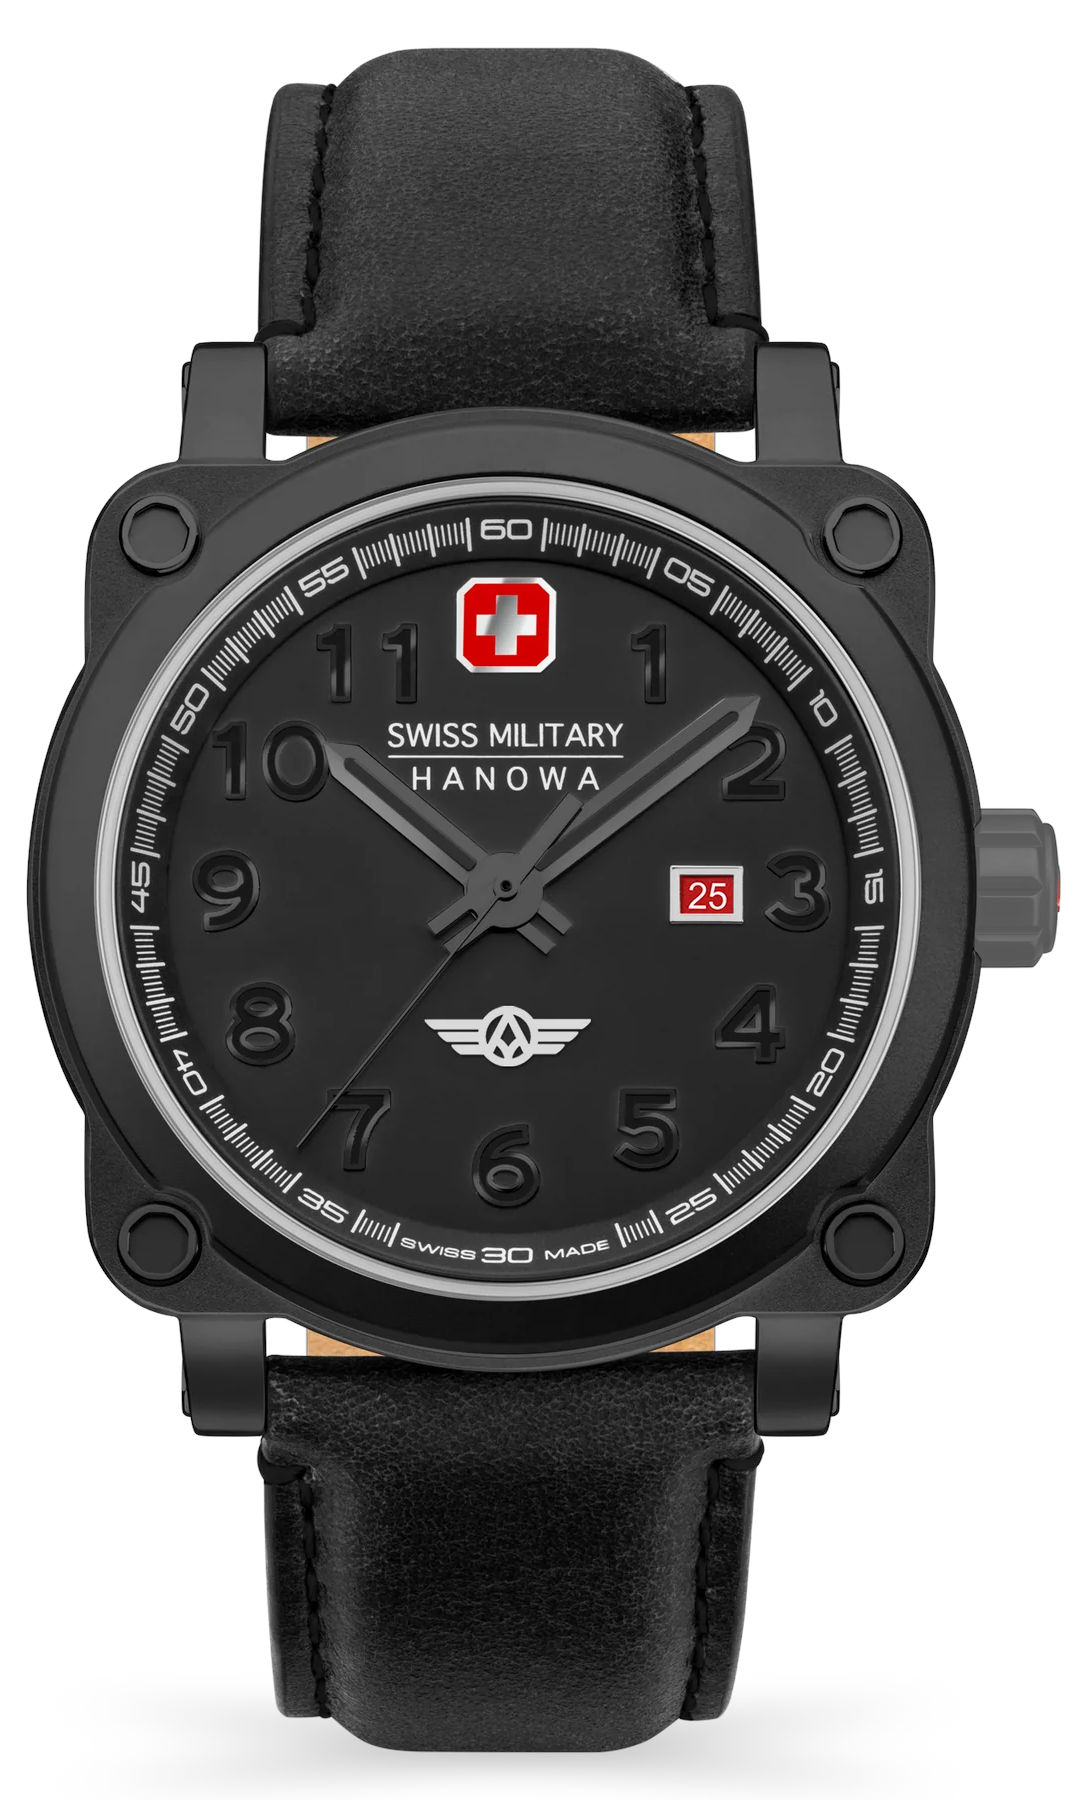  Swiss Military Hanowa SMWGB2101330